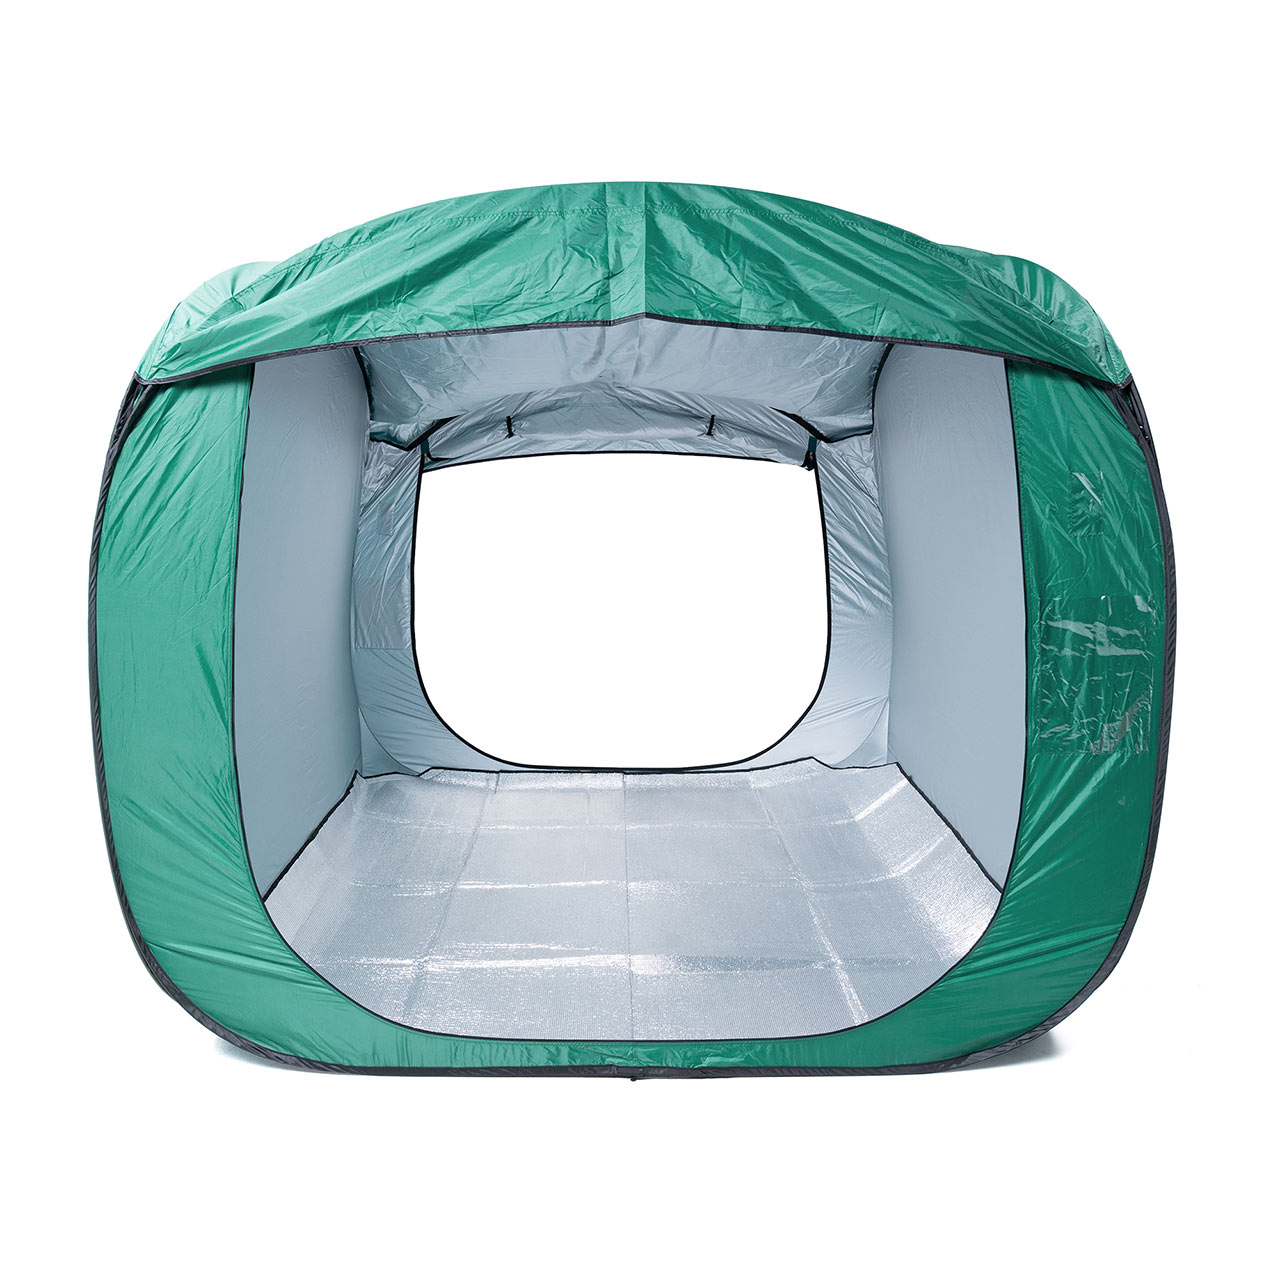 防災テント 室内テント ポップアップテント 災害テント 屋内 ワンタッチ式 表札付き 収納ケース付き EZ-PT02